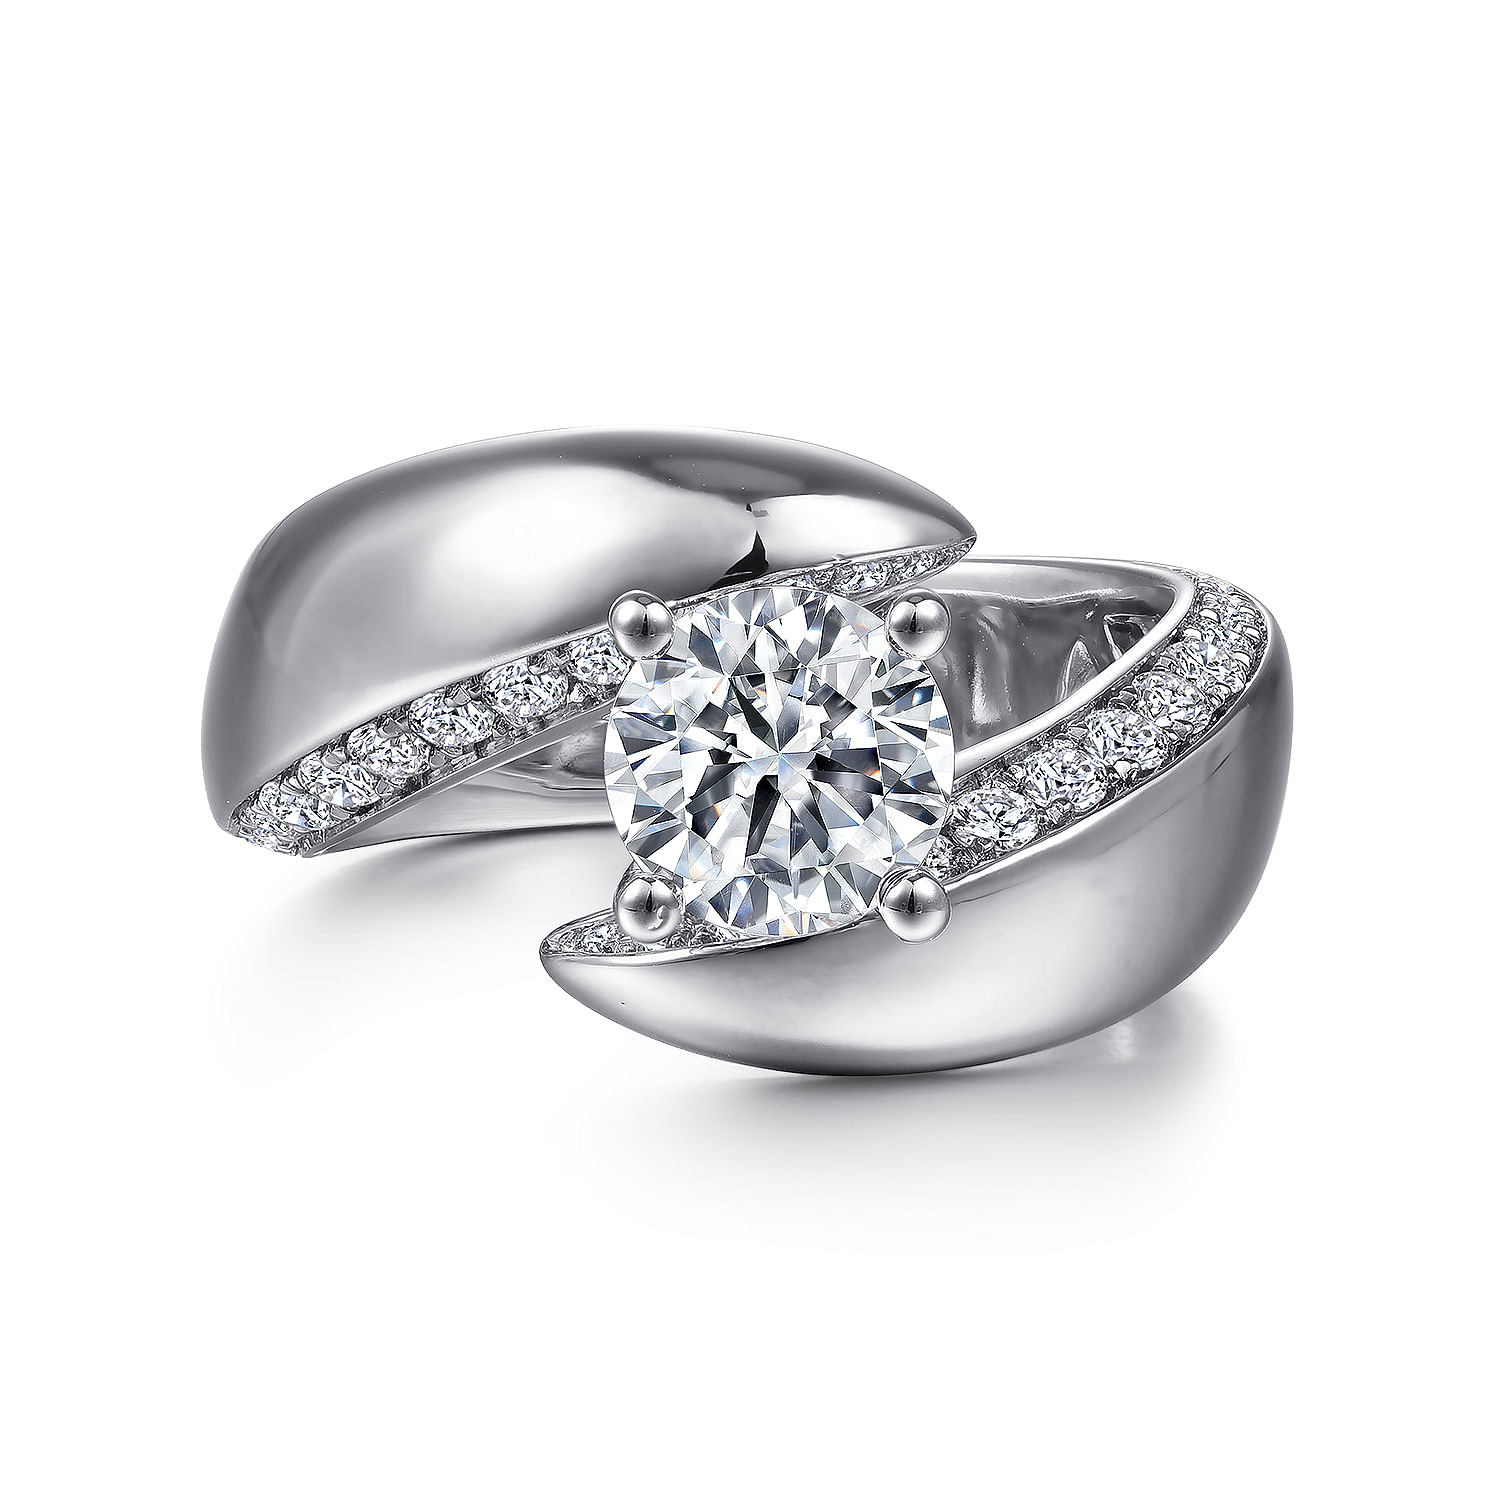 Hepburn - 14K White Gold Round Bypass Diamond Engagement Ring